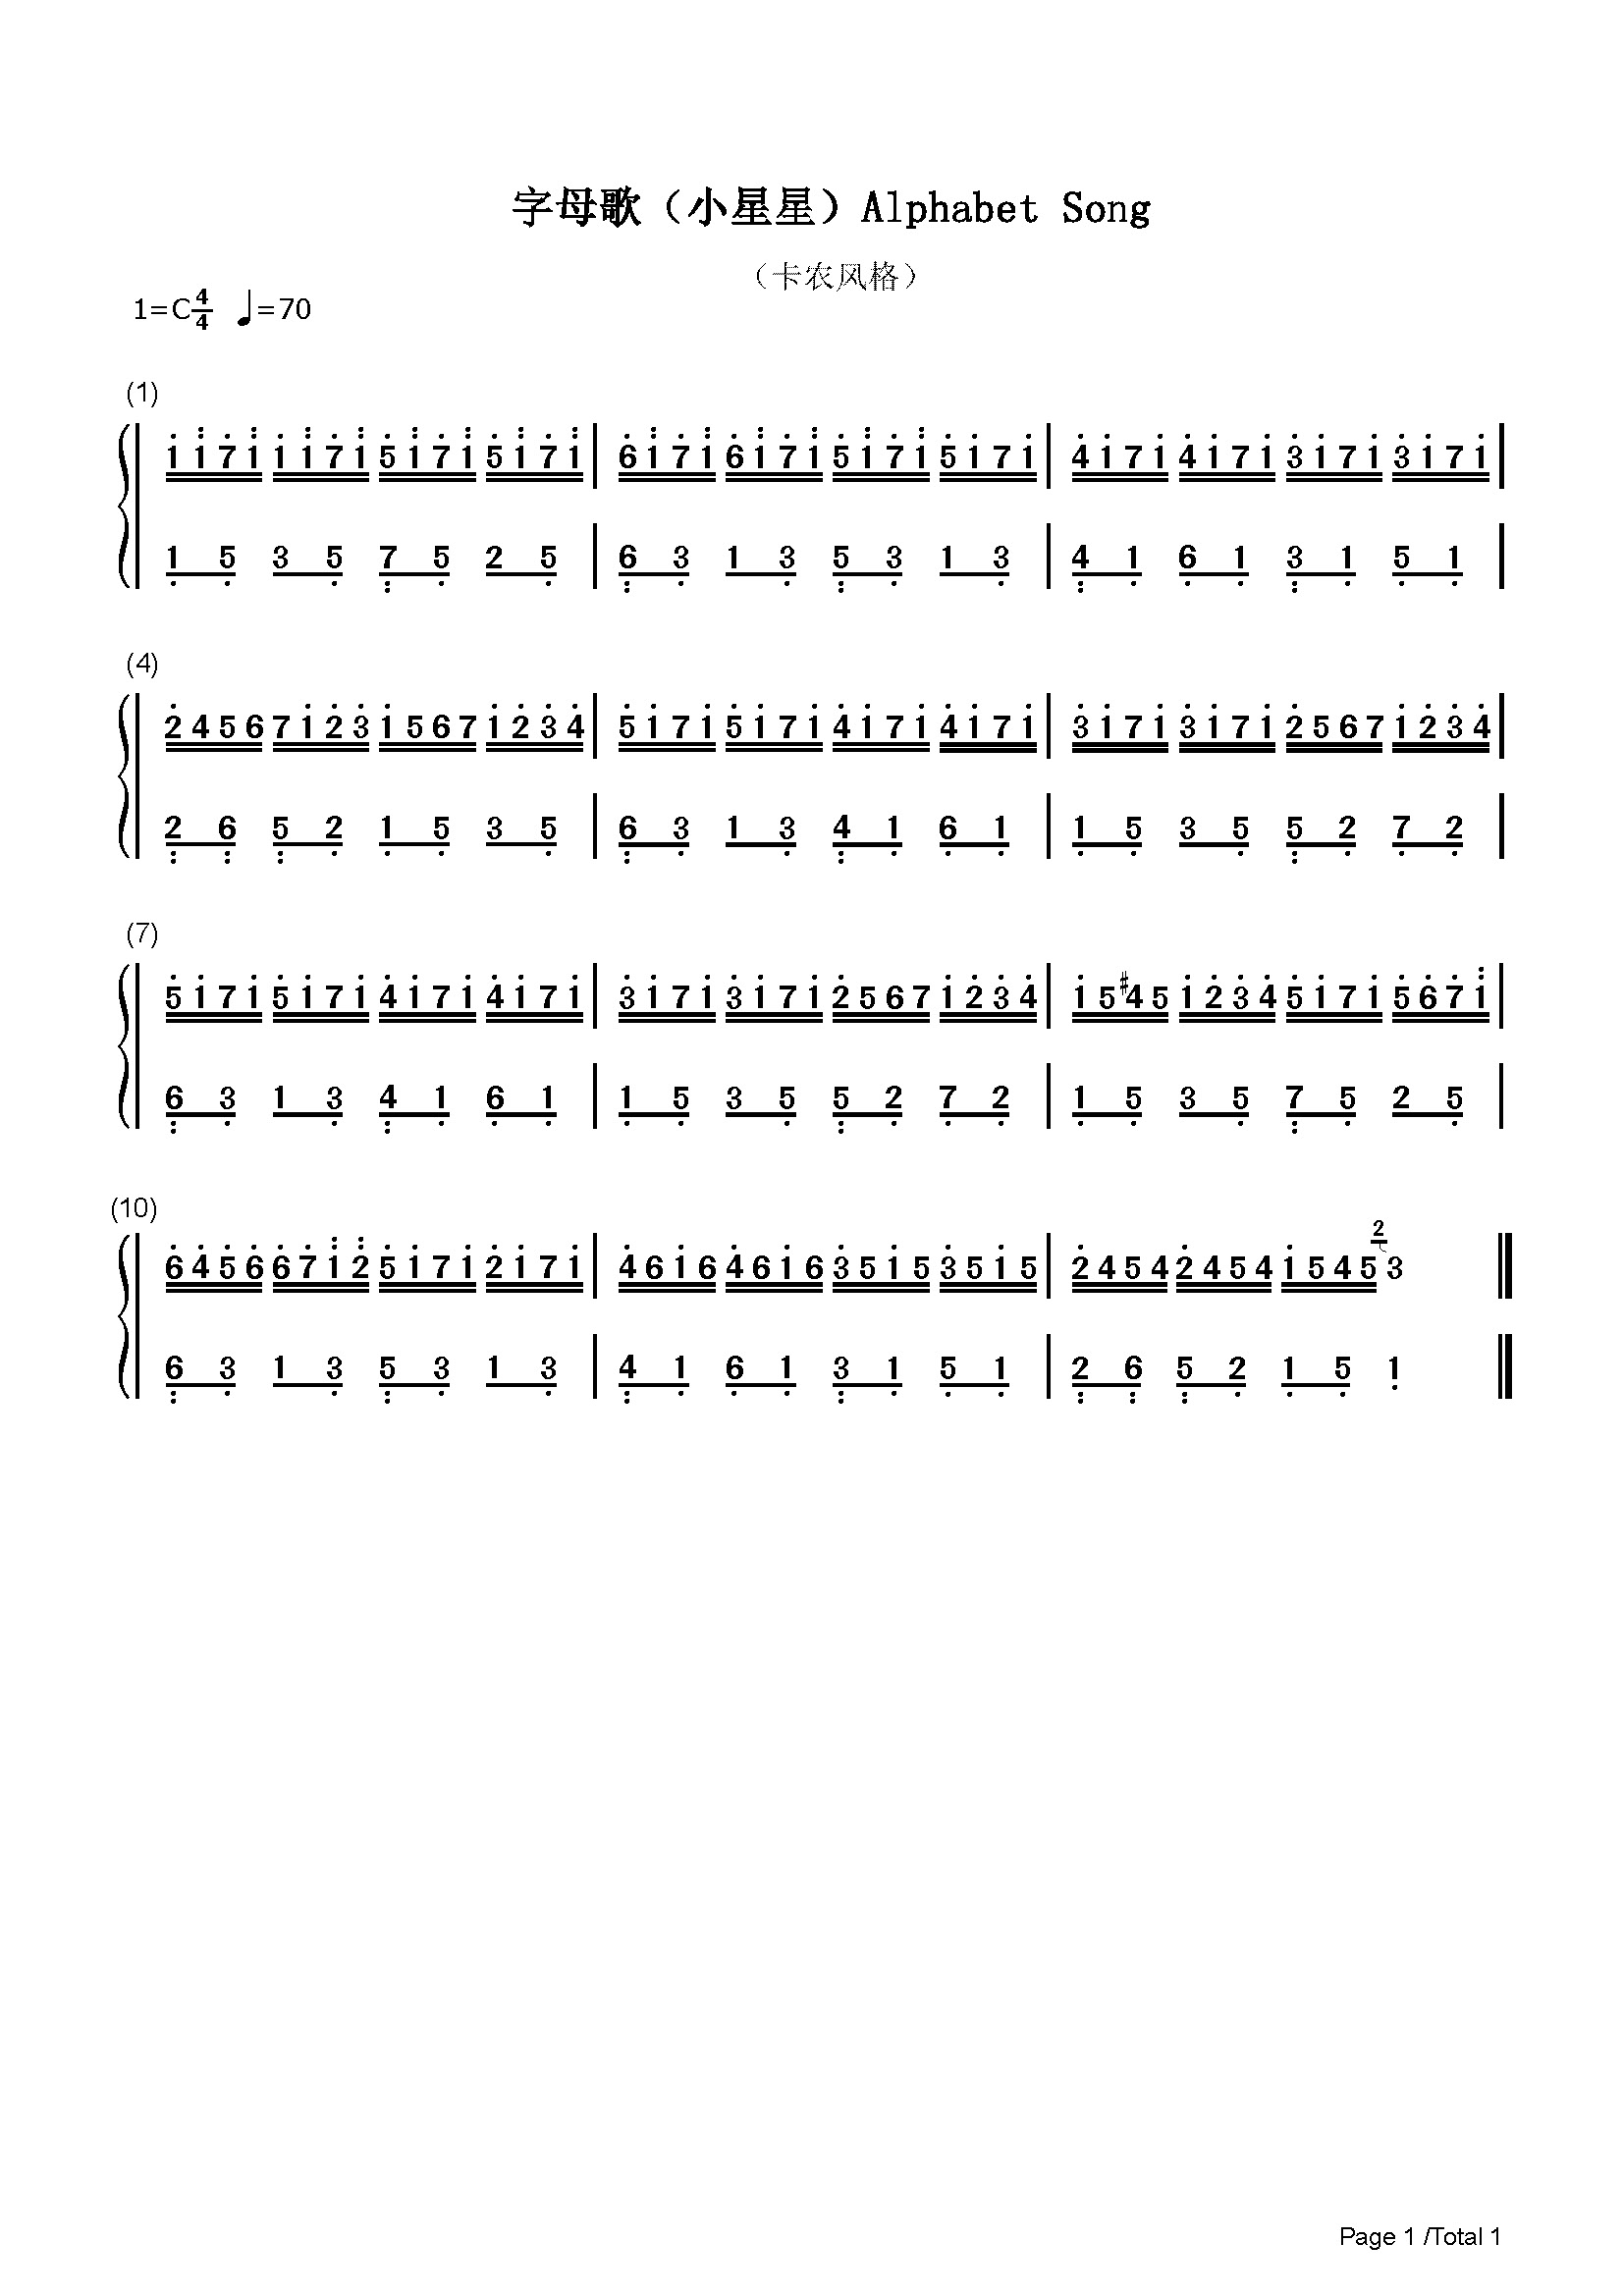 吉他谱中各调常用吉他和弦图表_文档下载